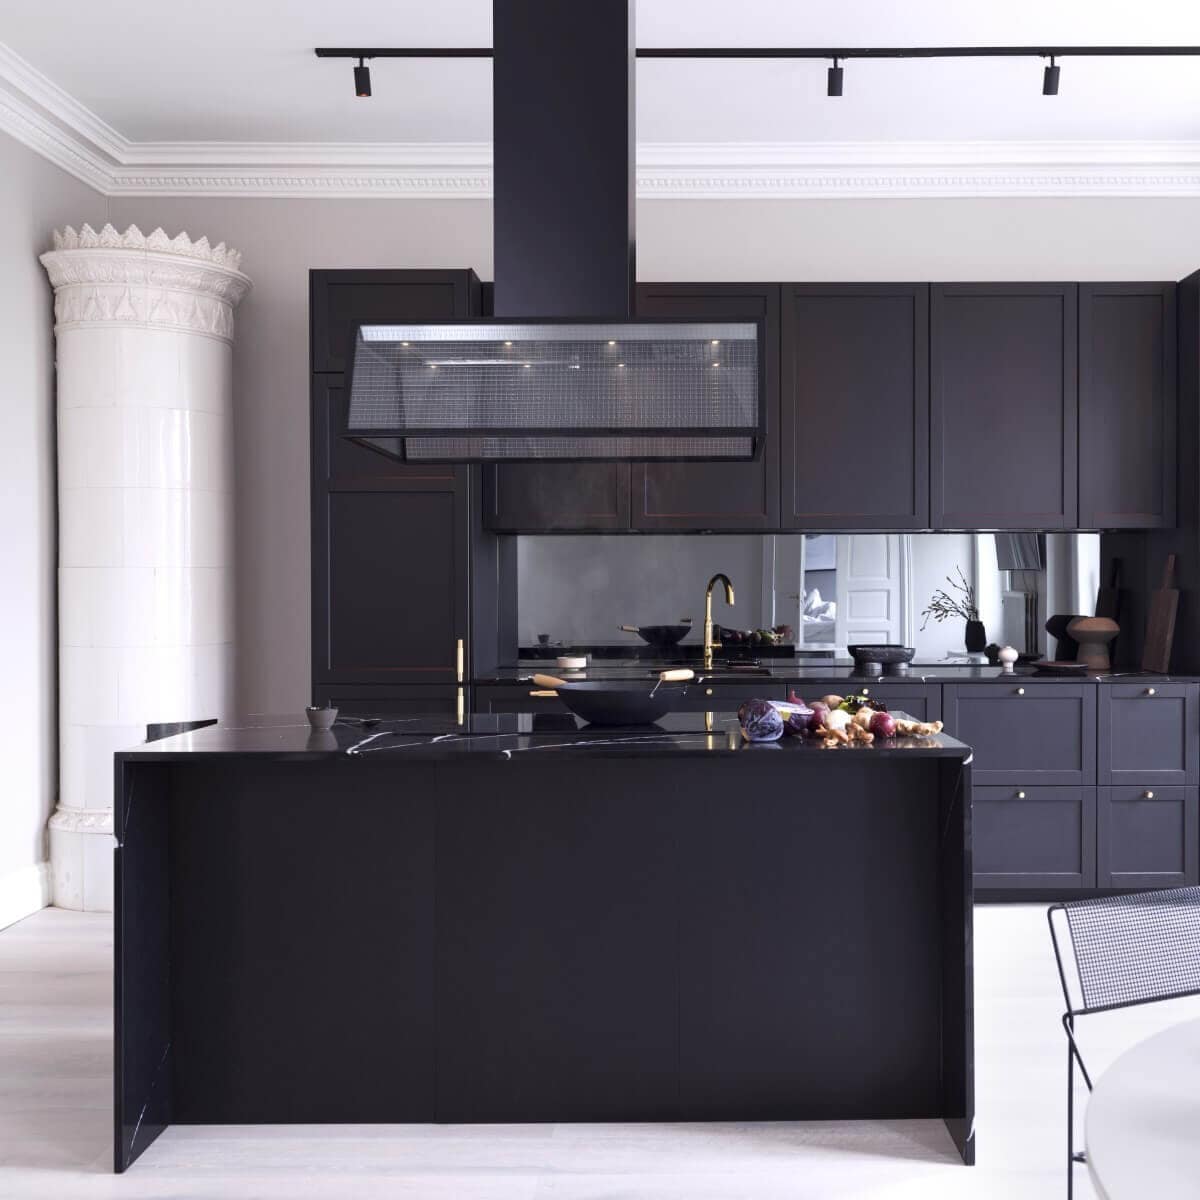 Frihängande köksfläkten Prisma i svart utförande ovanför köksö i modern sekelskiftesmiljö med mörka köksluckor.